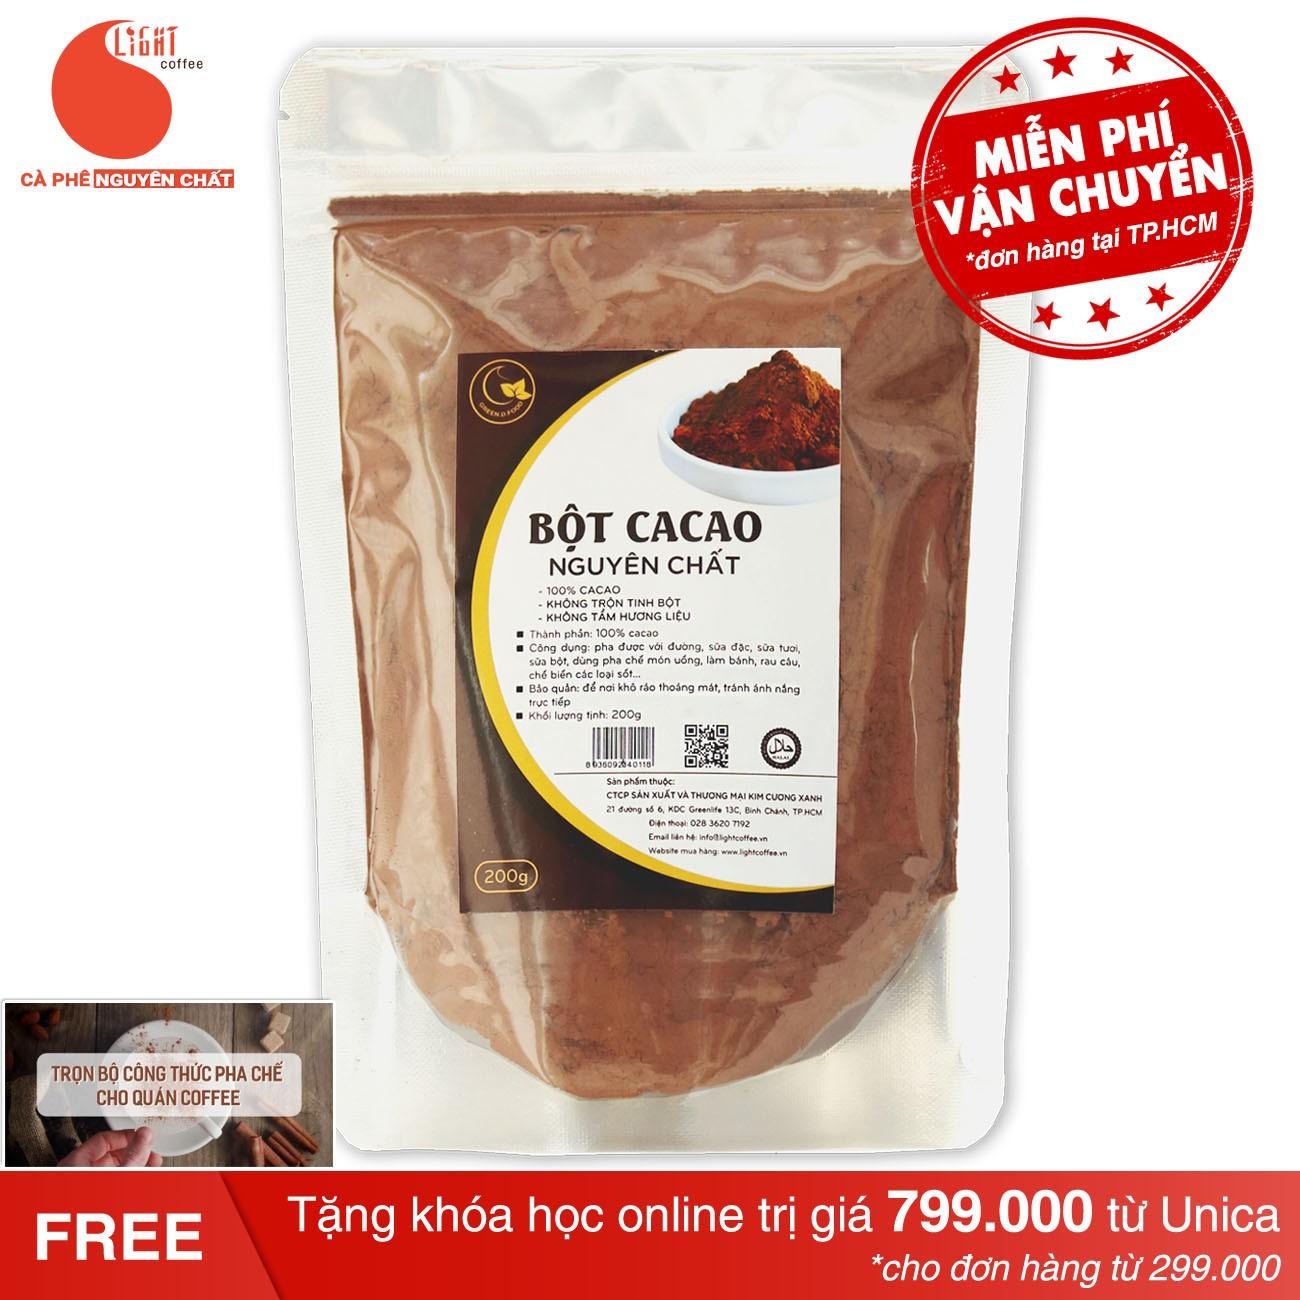 100% Pure Cocoa Powder - Light Cacao